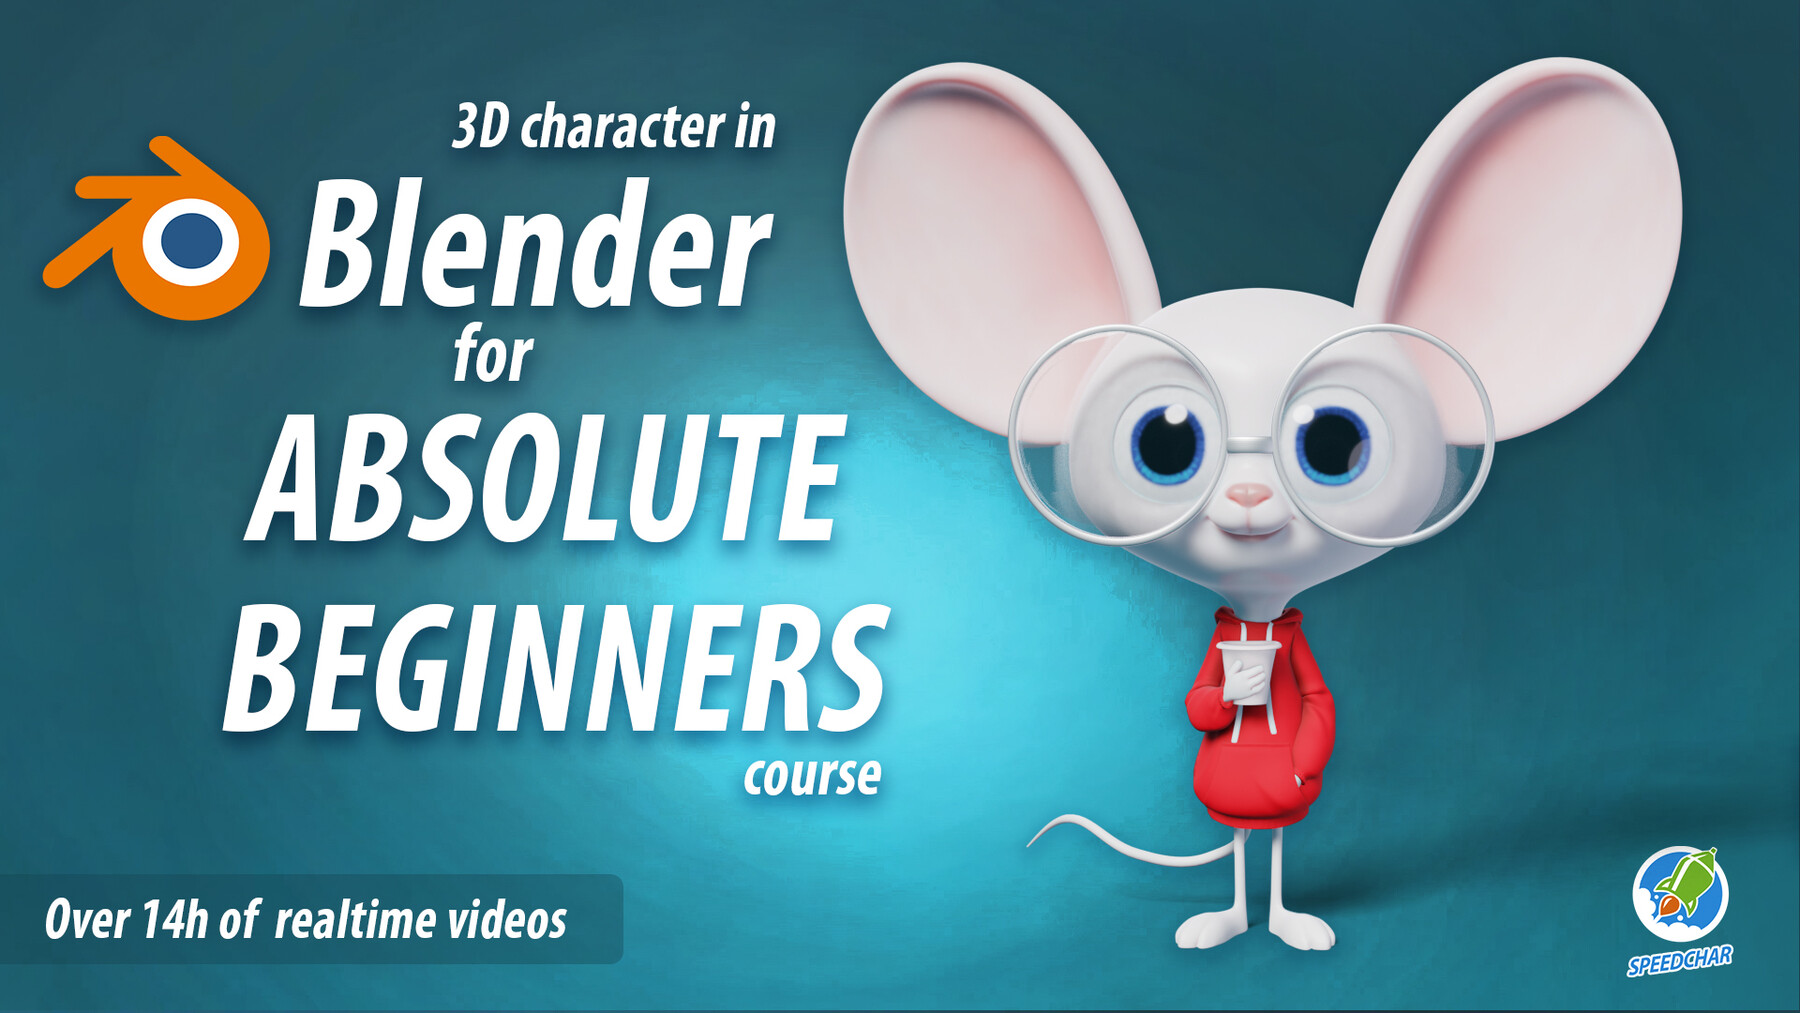 blender 3d design course download